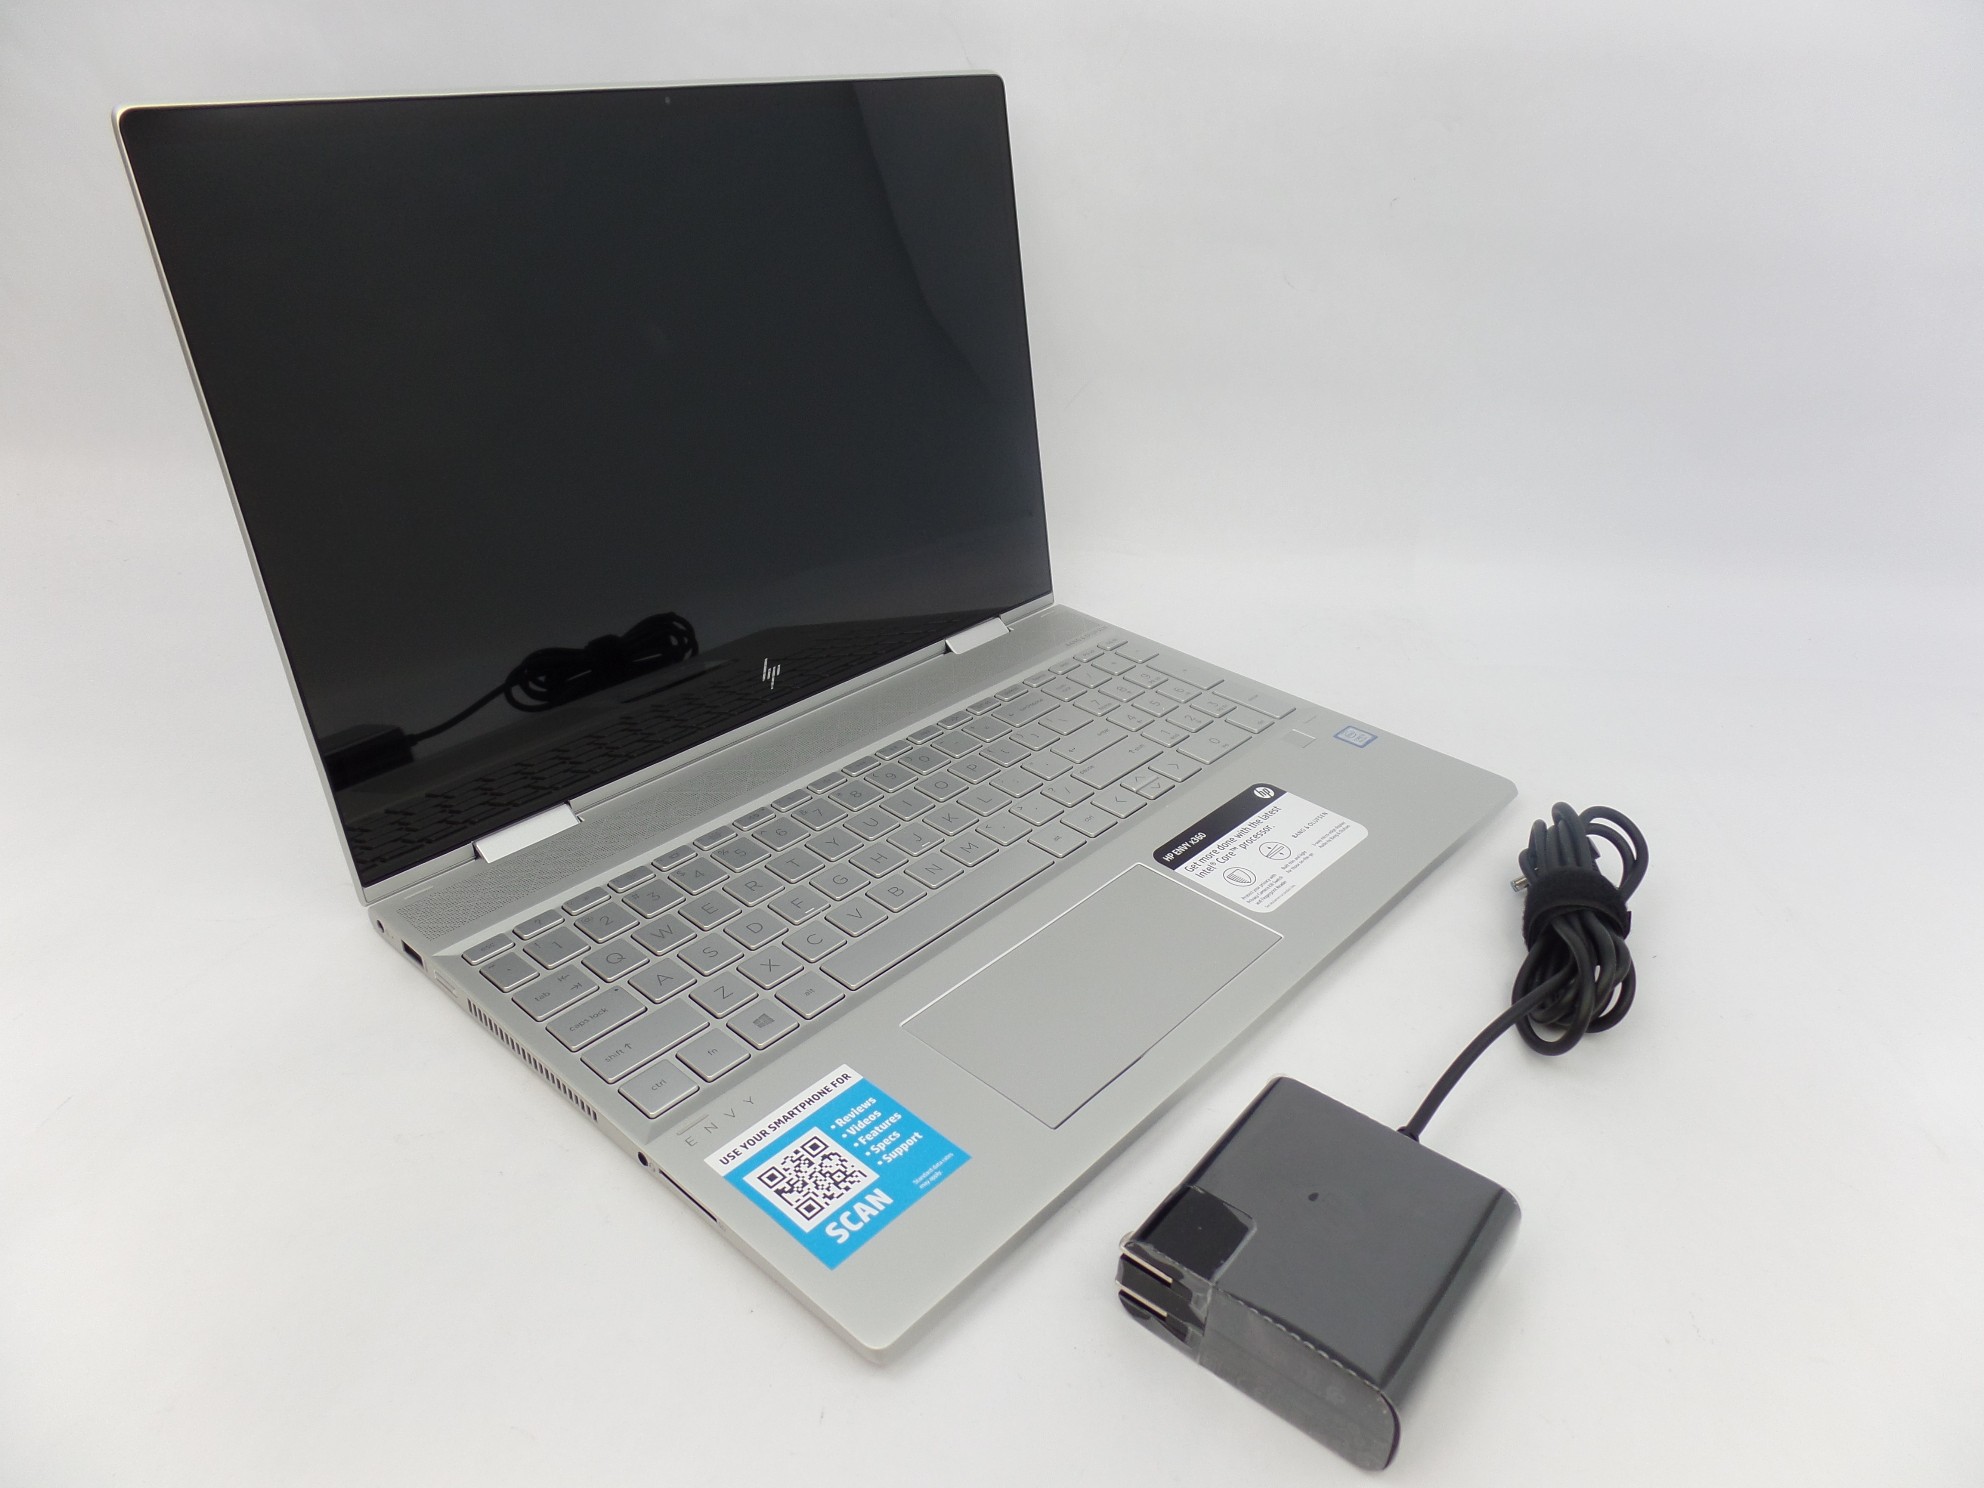 HP ENVY x360 15m-dr0011dx 15.6" Touch FHD i5-8250U 1.6GHz 8GB 256GB SSD 5XK46UA 